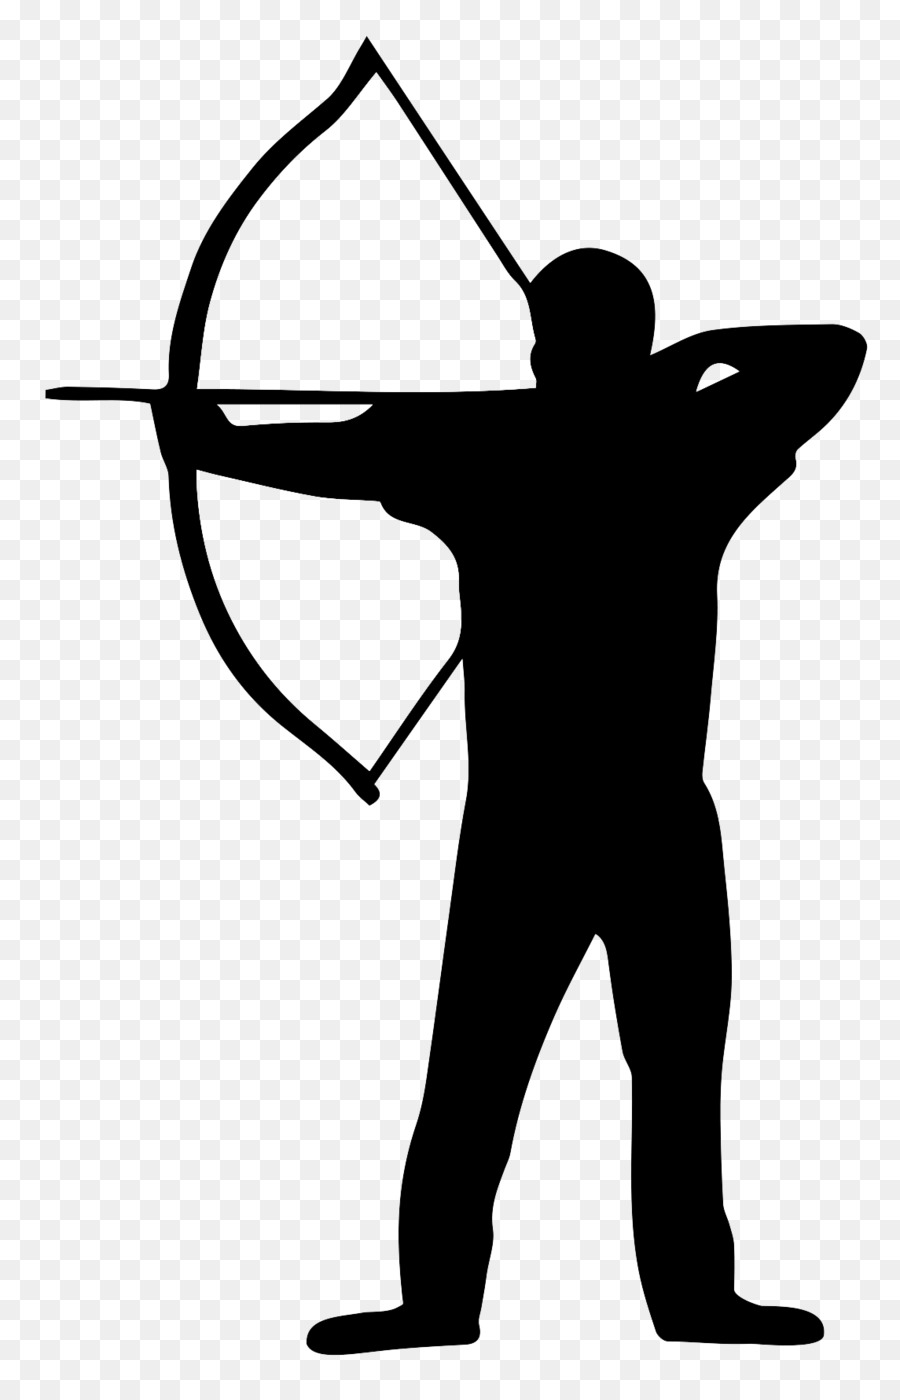 Archers de Brocéliande Archery Silhouette Bowyer Clip art - Silhouette png download - 1145*1770 - Free Transparent Archery png Download.